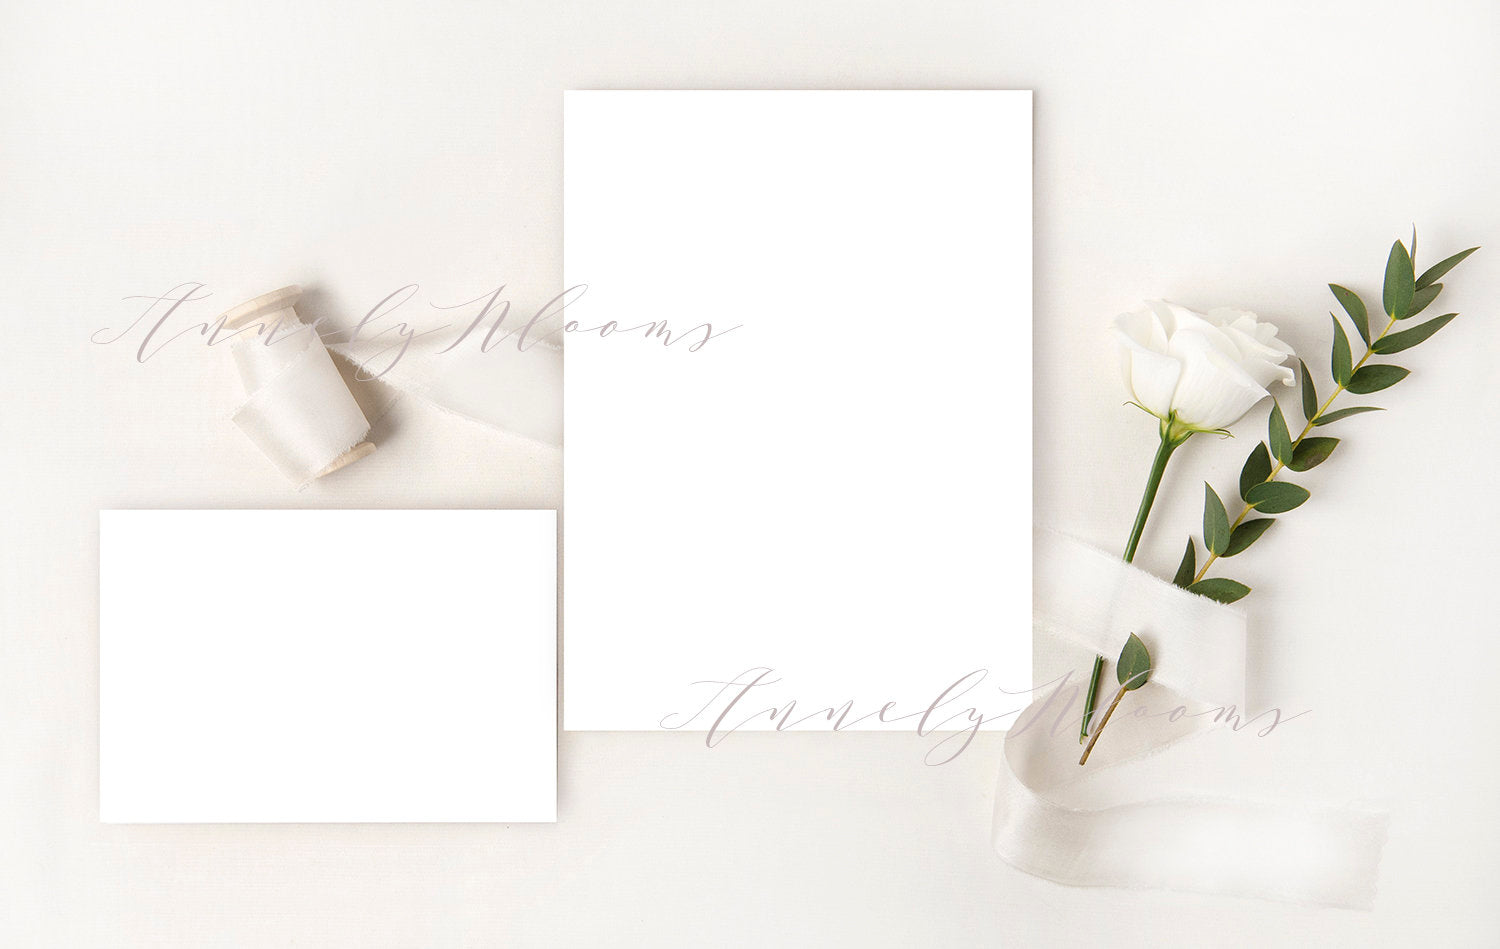 Free Wedding Wedding Mockup With Silk Ribbon, White Rose And Eucalyptus Foliage. Elegant Mockup For Your Wedding Designs.